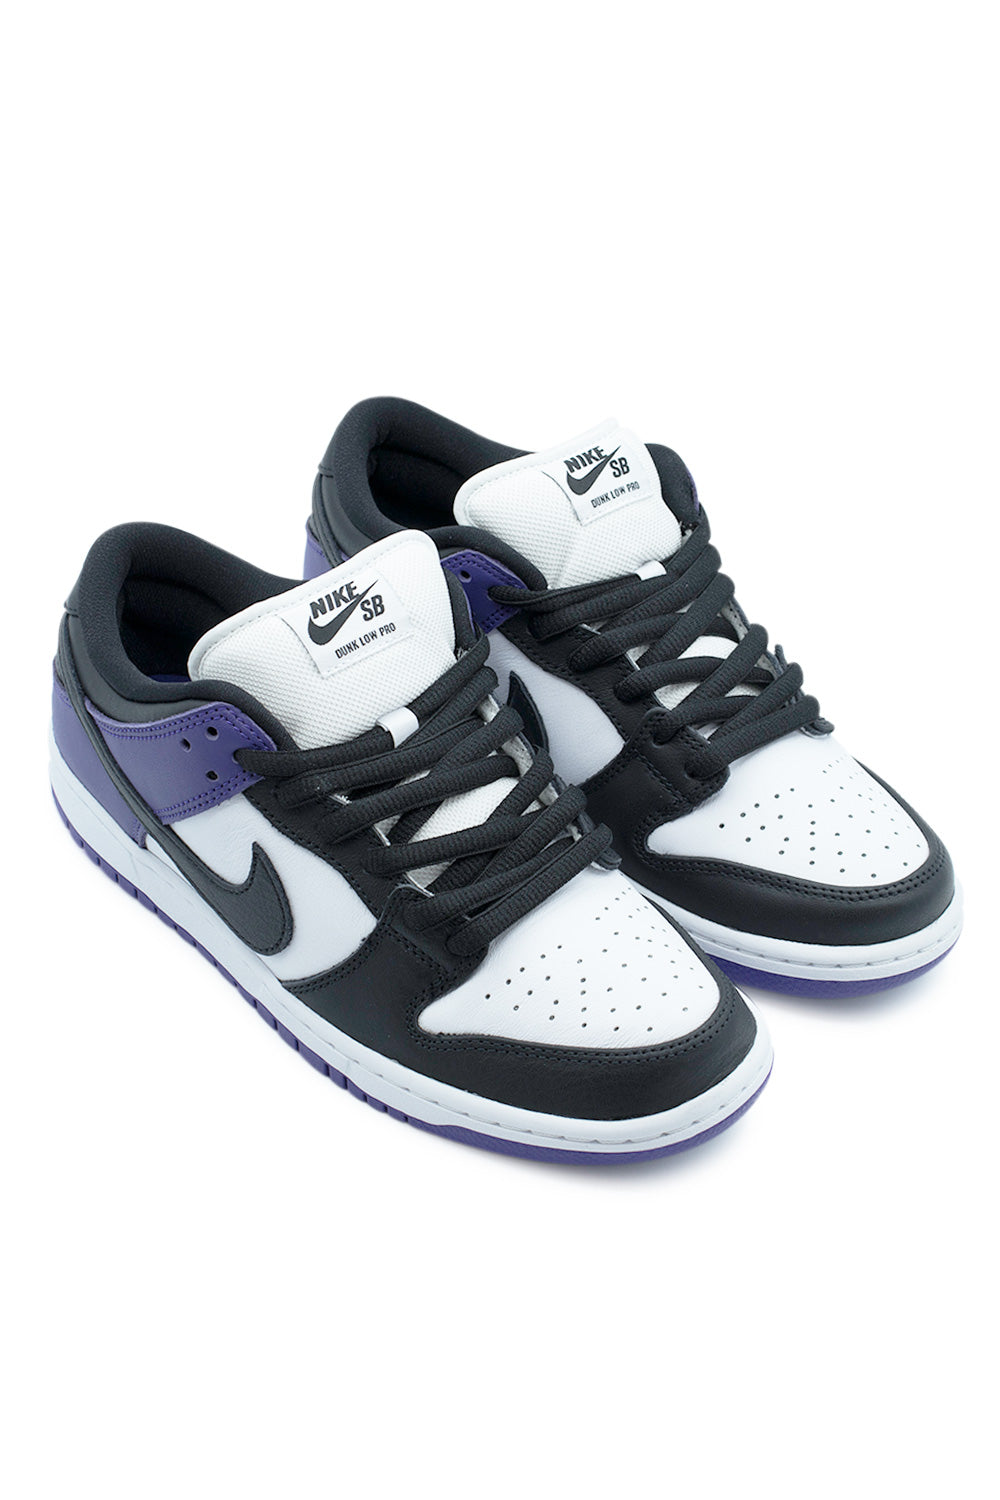 Nike SB Dunk Low Pro Shoe Court Purple / Black / White - BONKERS